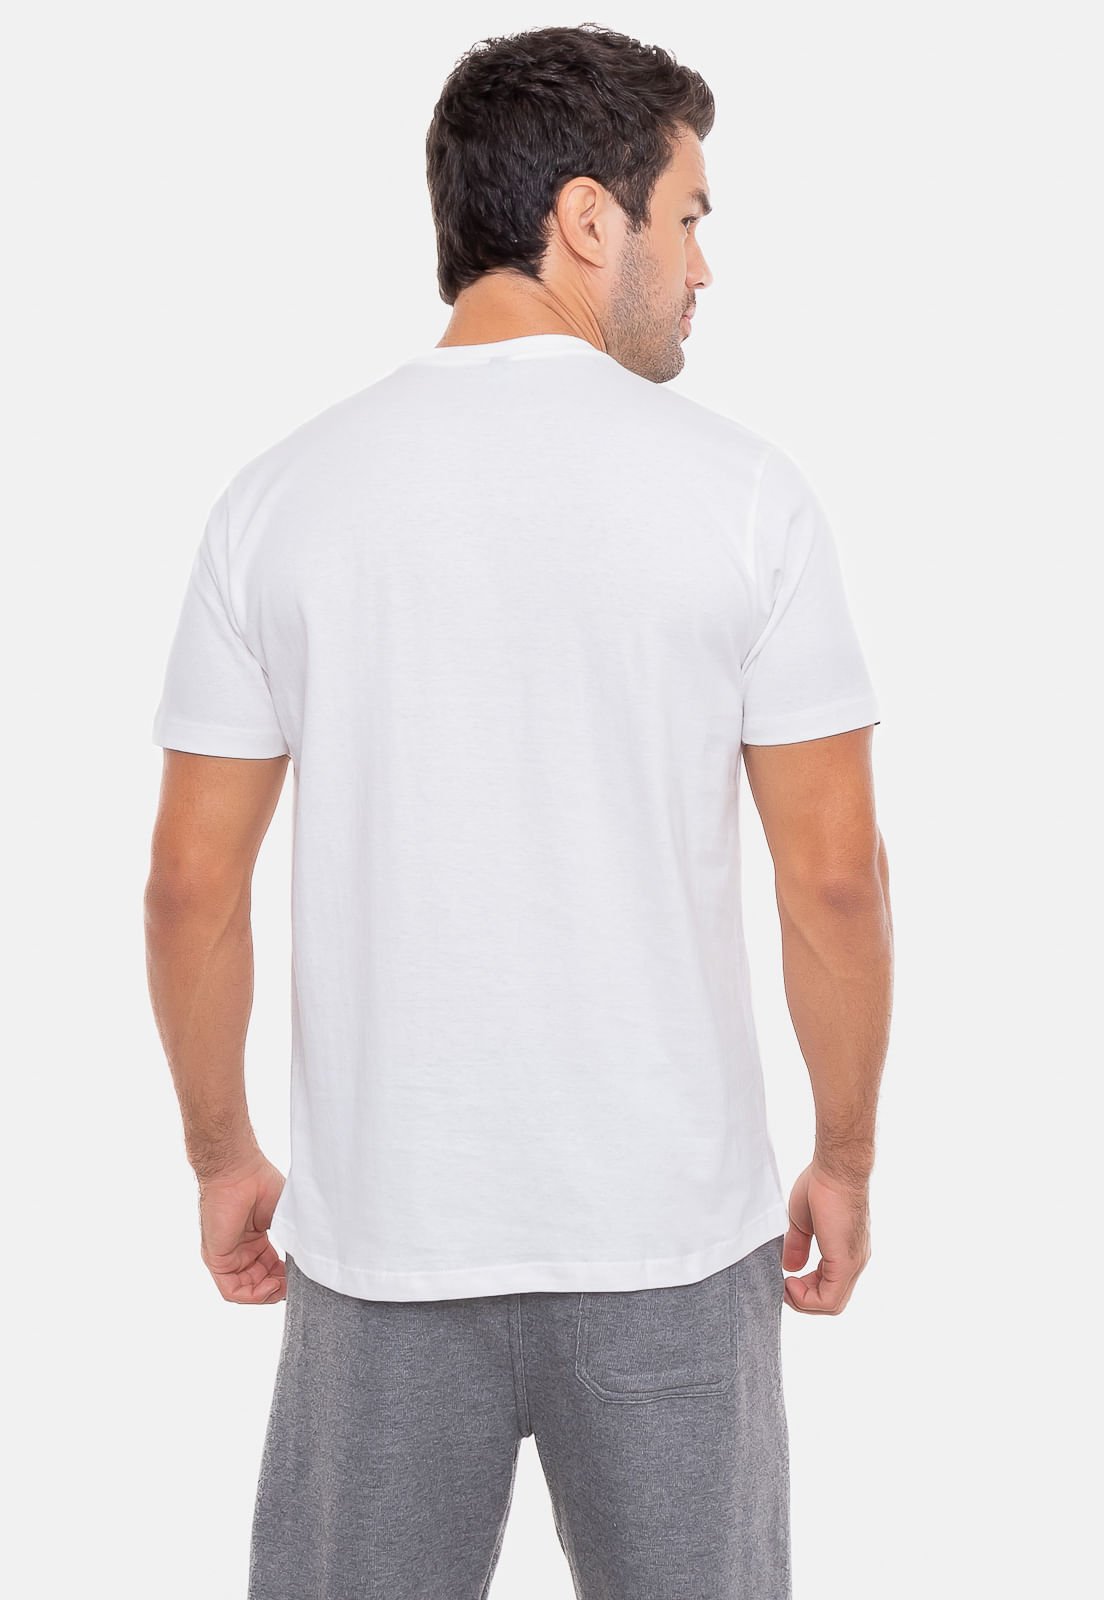 Camiseta HD Hawaiian Branca Branco 2